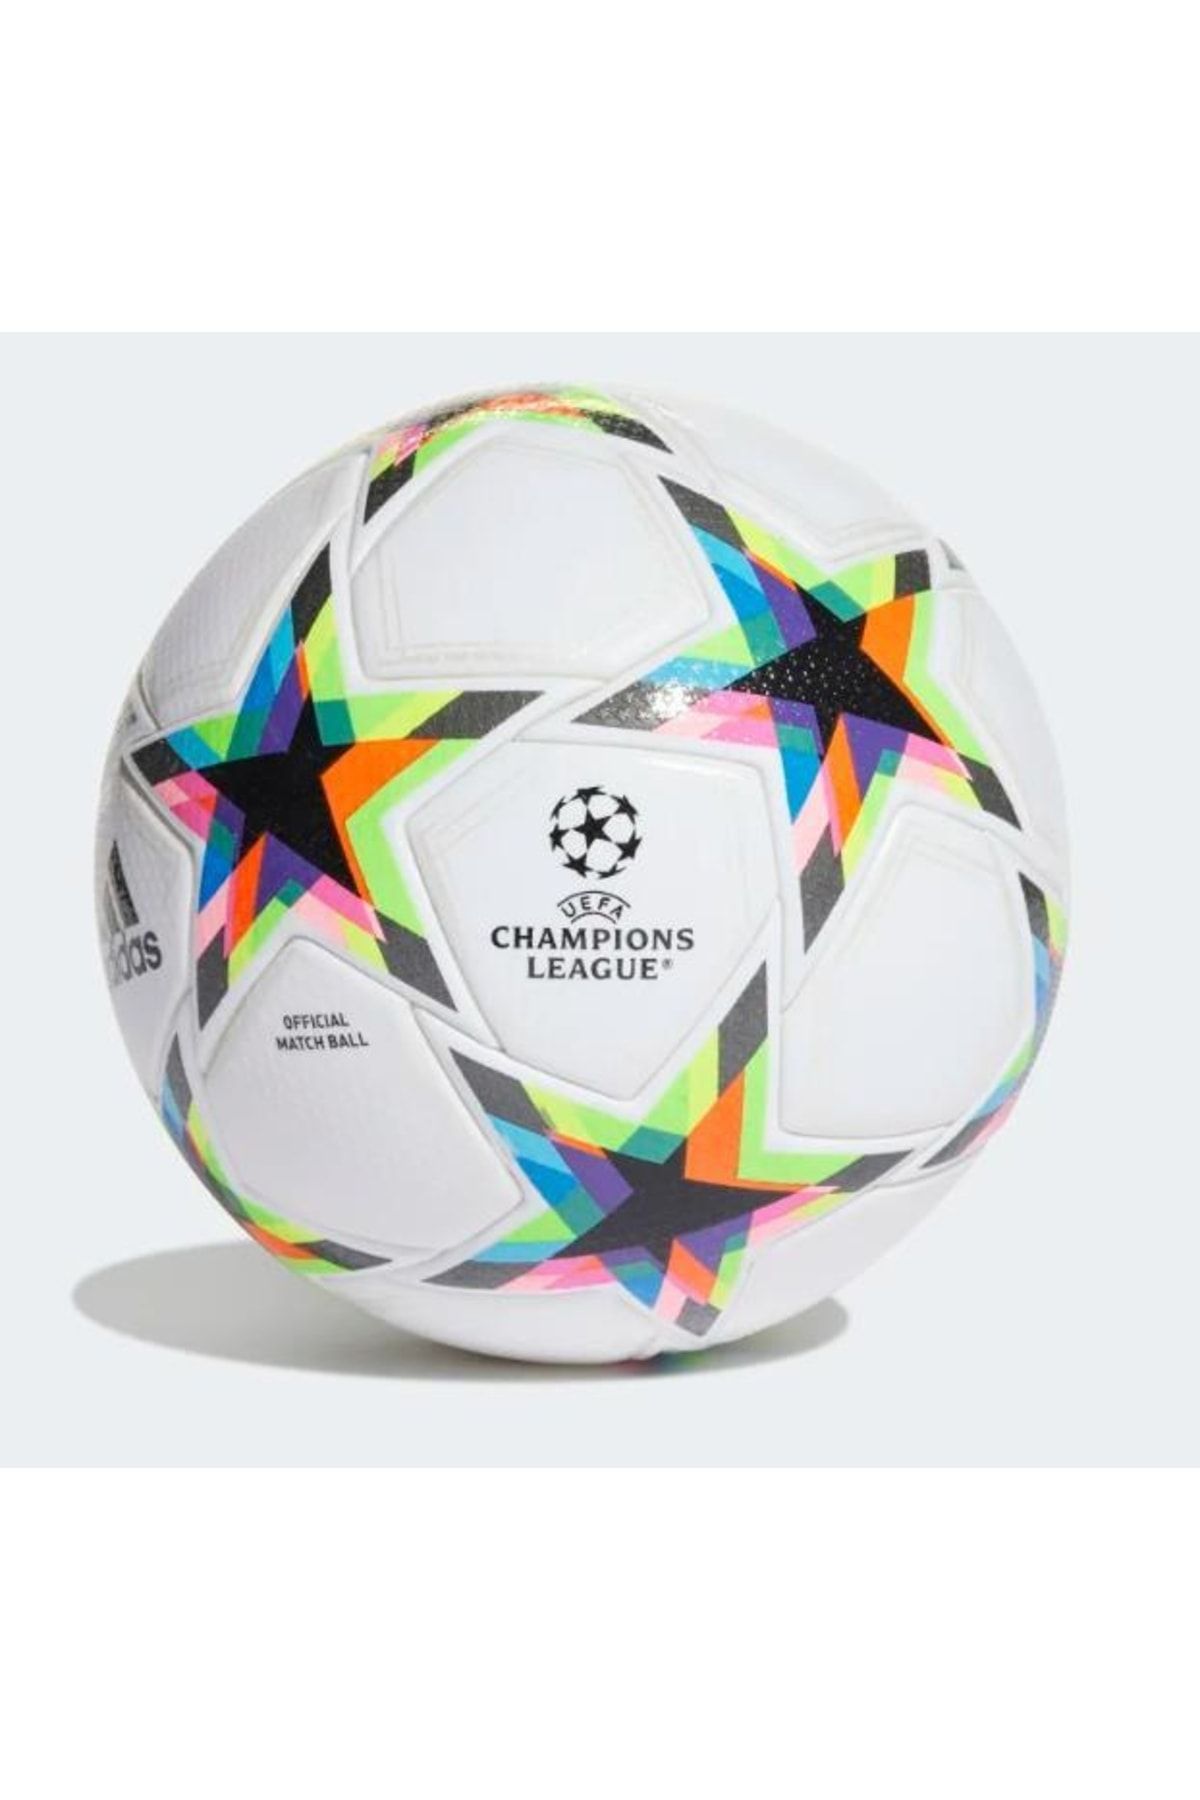 adidas Uefa Champions League Pro Futbol Topu He3777 Fiyatı, Yorumları